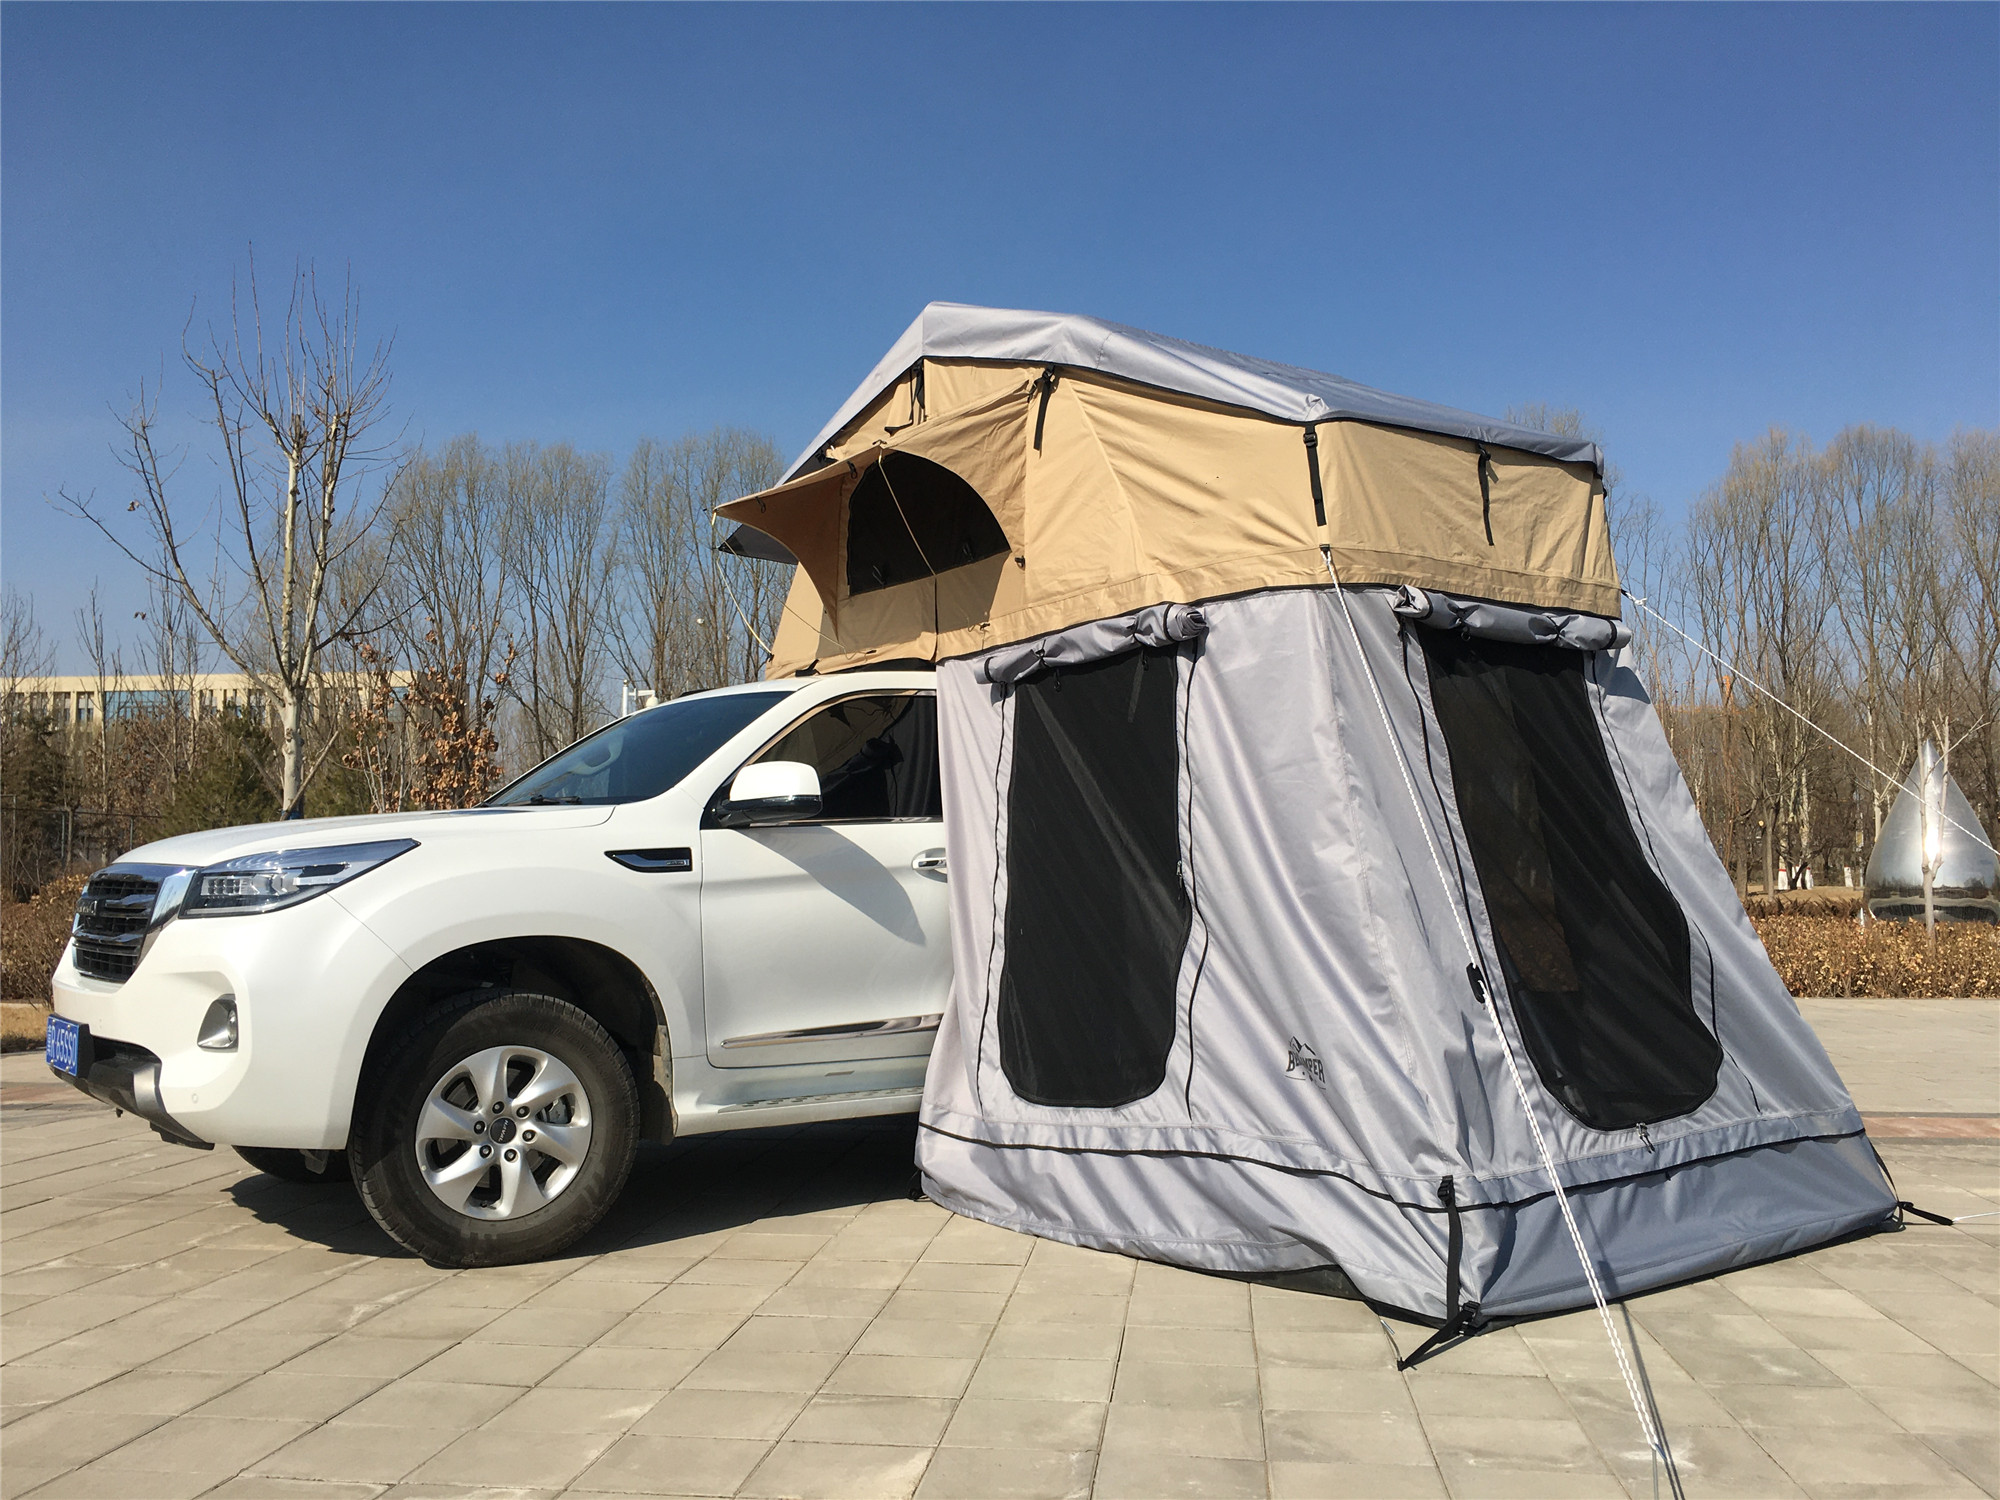 Cum să prosperi într-un cort de pe acoperiș?